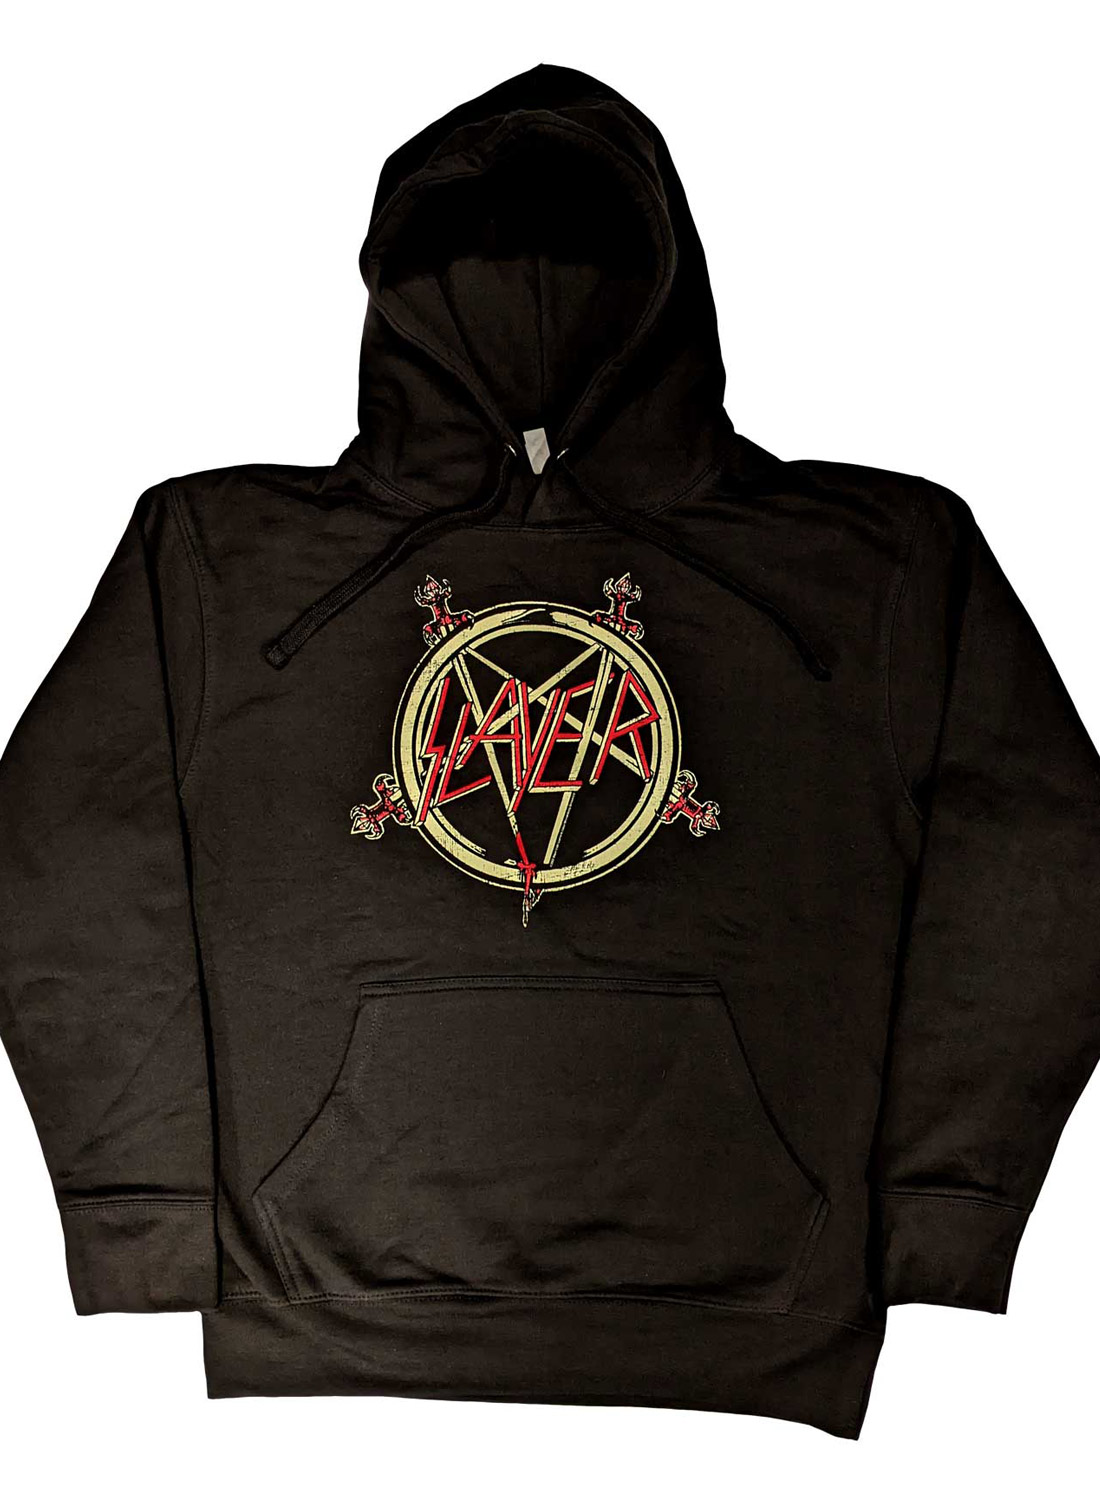 Slayer Pentagram Hoodie